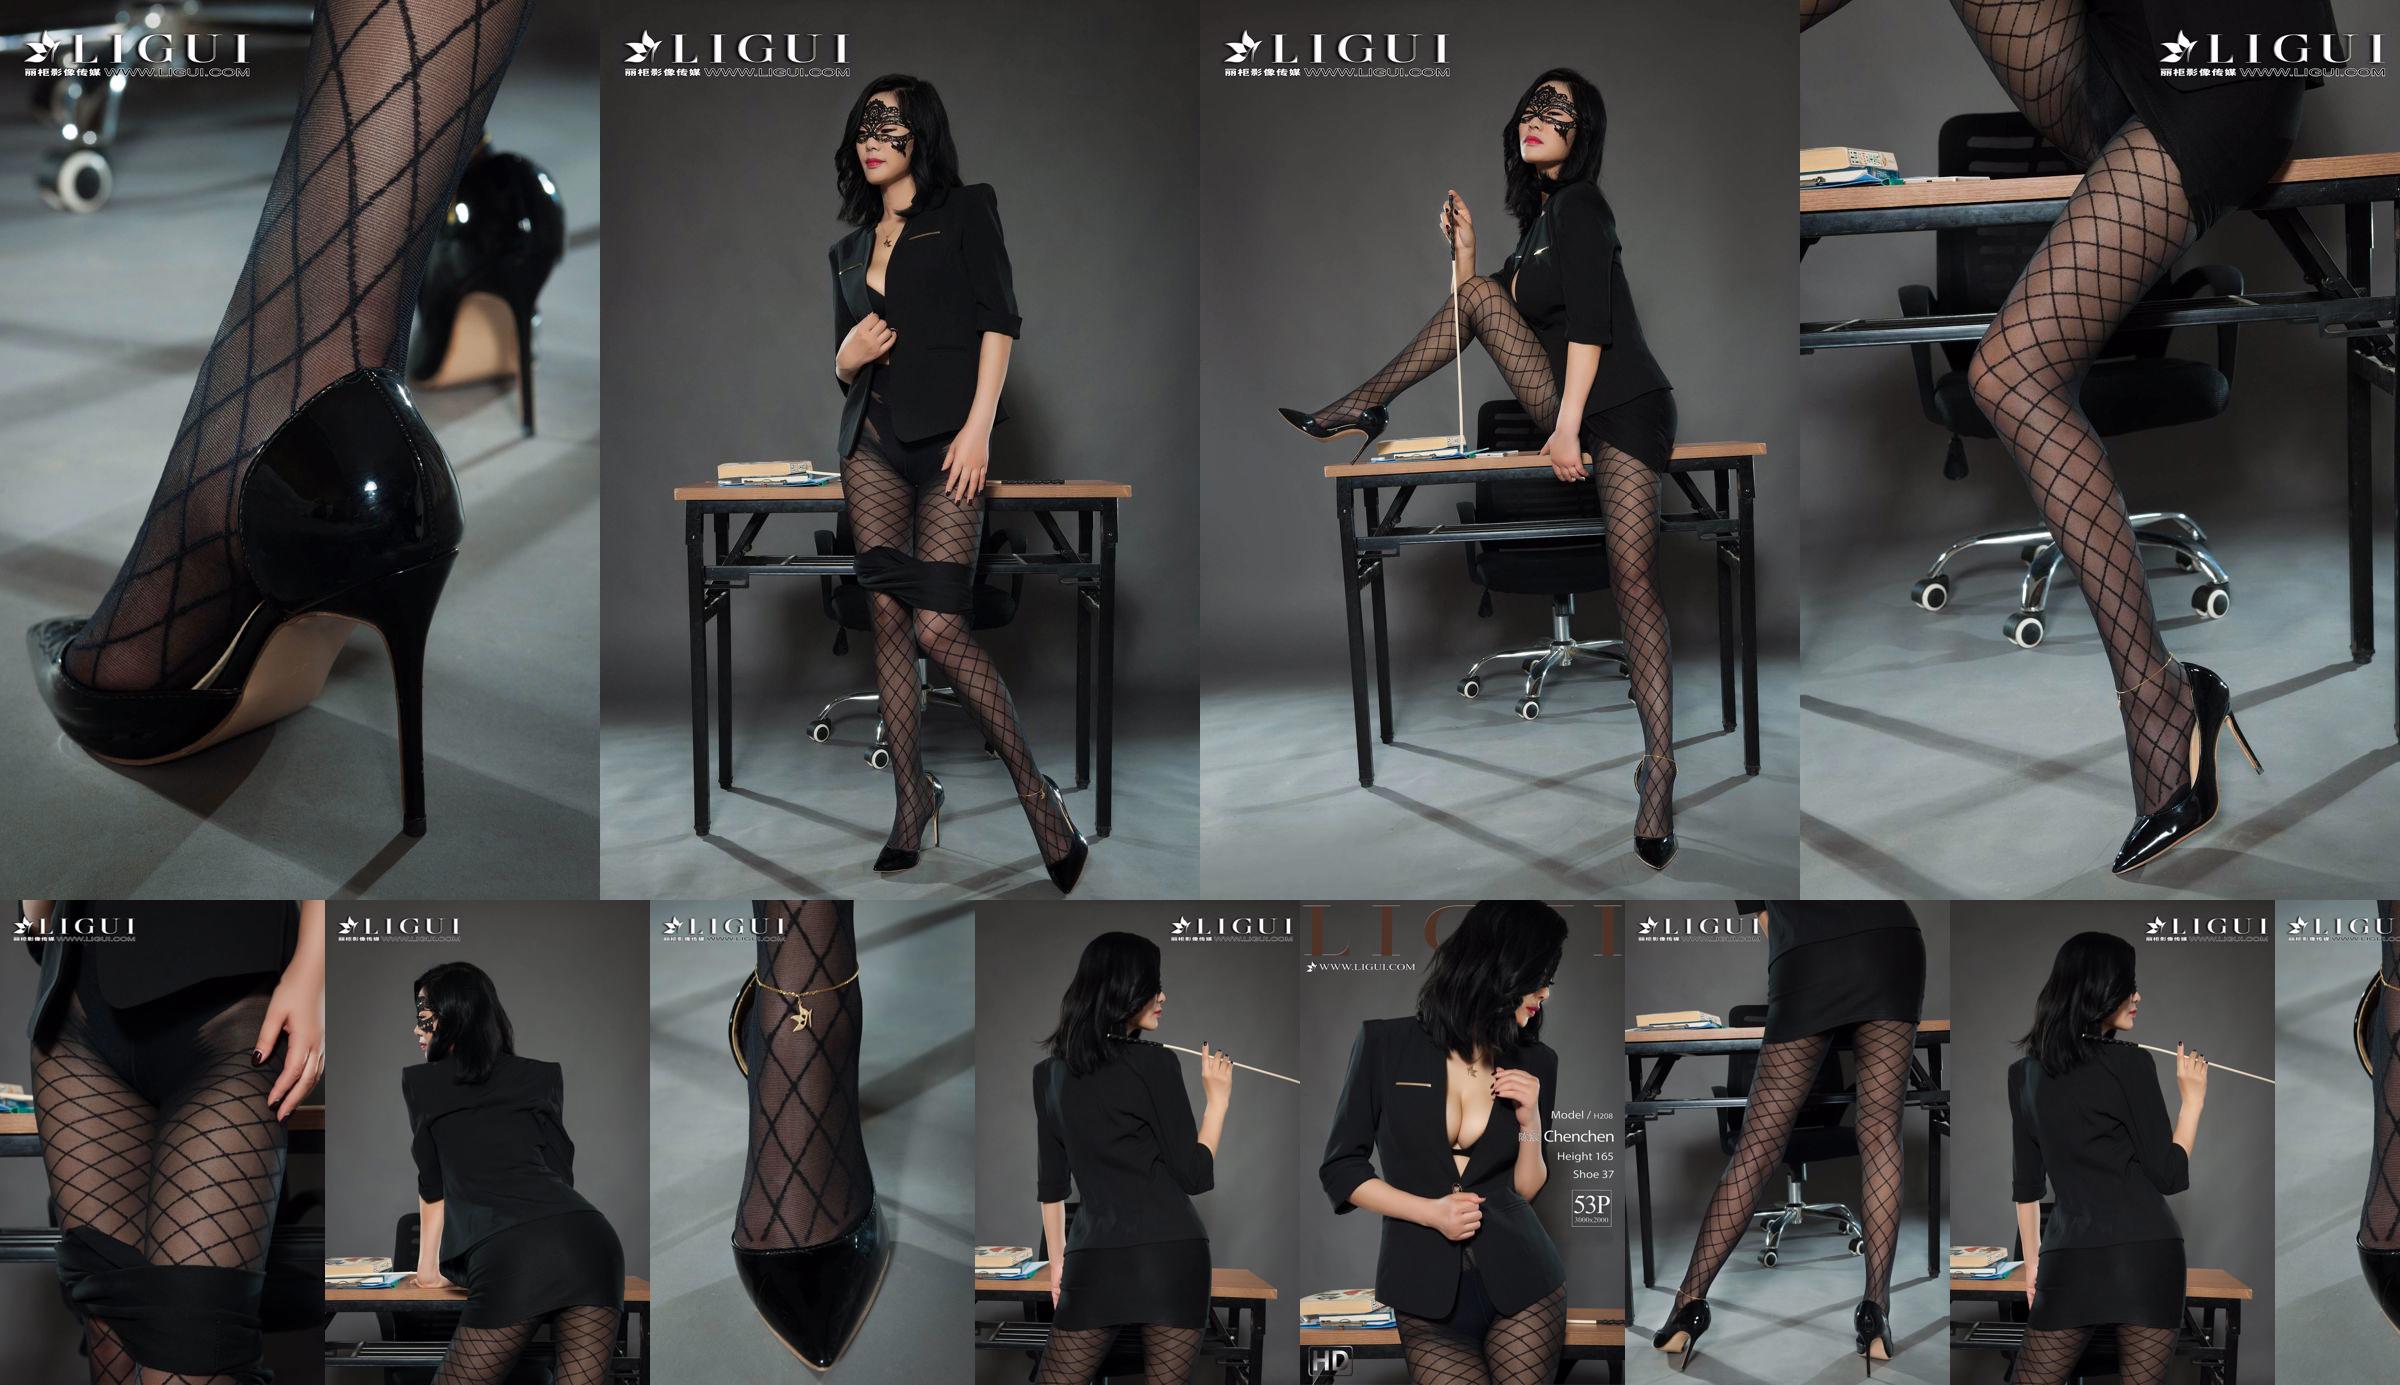 Modelo de pierna Chen Chen "Black Silk Milf" [Ligui Liguil] Belleza de Internet No.ee1118 Página 1